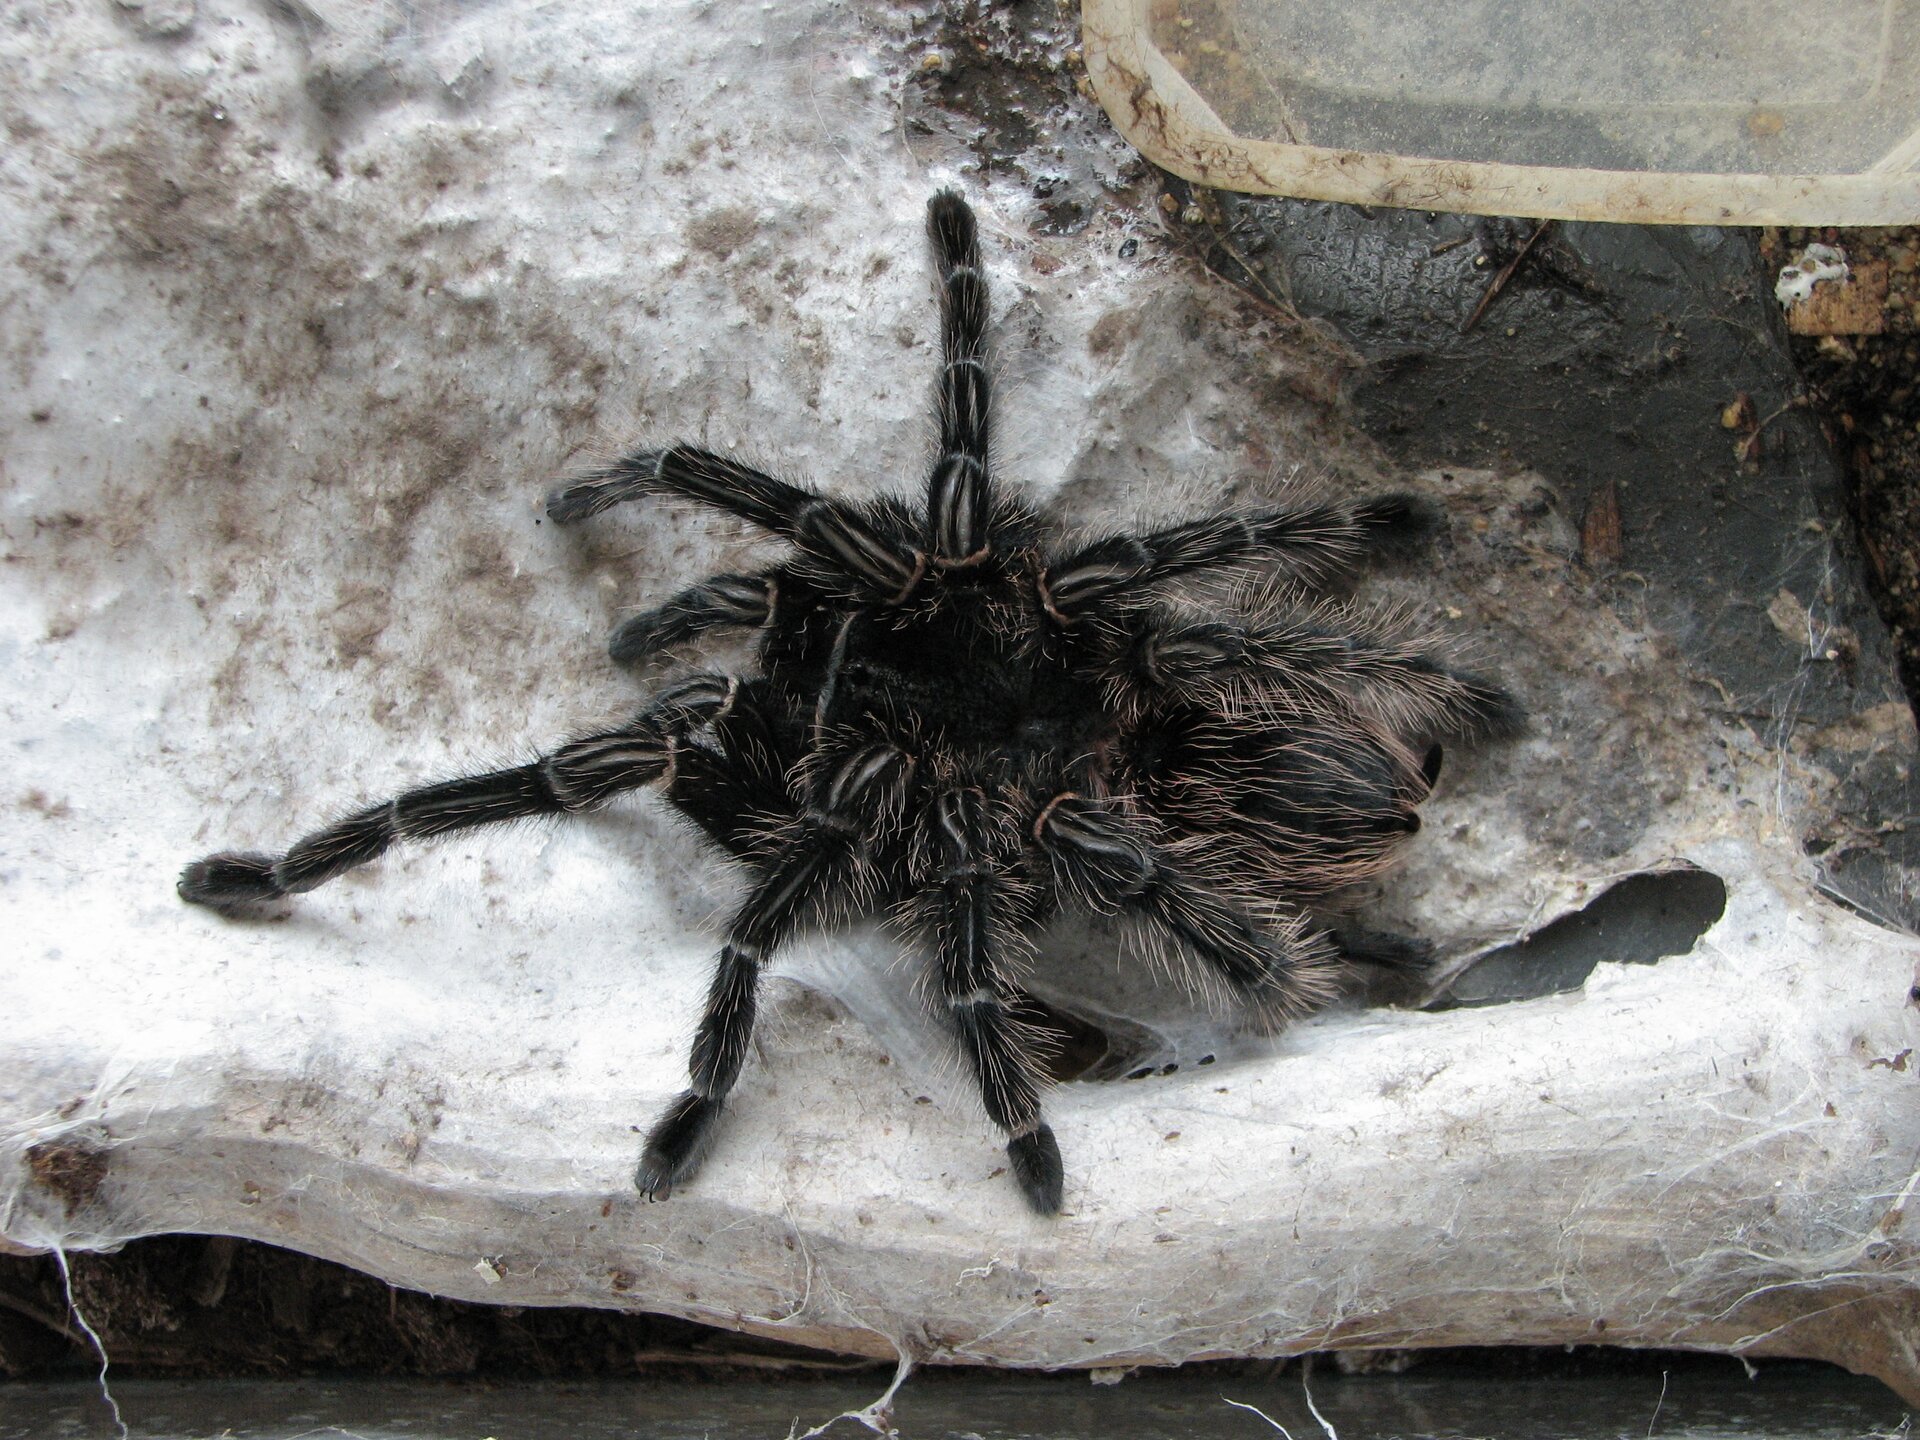 Fotografia pająka ptasznika. Zwierzę jest czarne, pokryte szczecinkami. Porusza się na czterech parach długich odnóży. Przednia część ciałą jest po prawej stronie zdjęcia. Z przodu ciała znajdują się dwie pary odnóży służących do chwytania pokarmu.